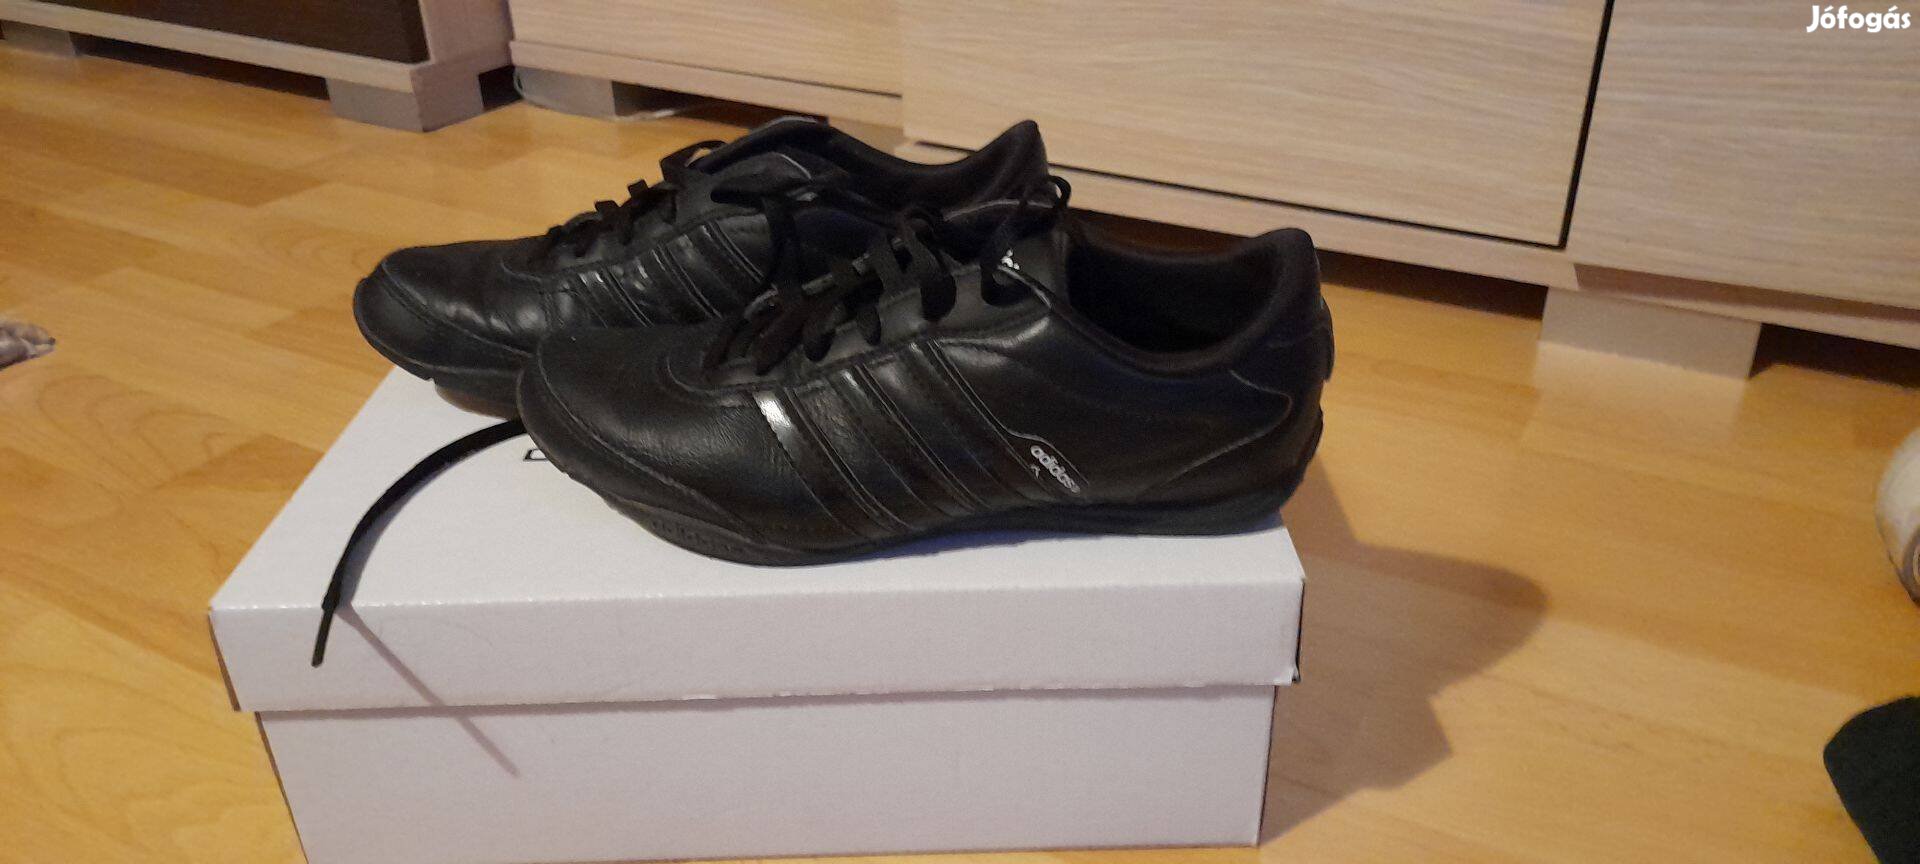 36-os méretű fekete színű Adidas edzőcipő